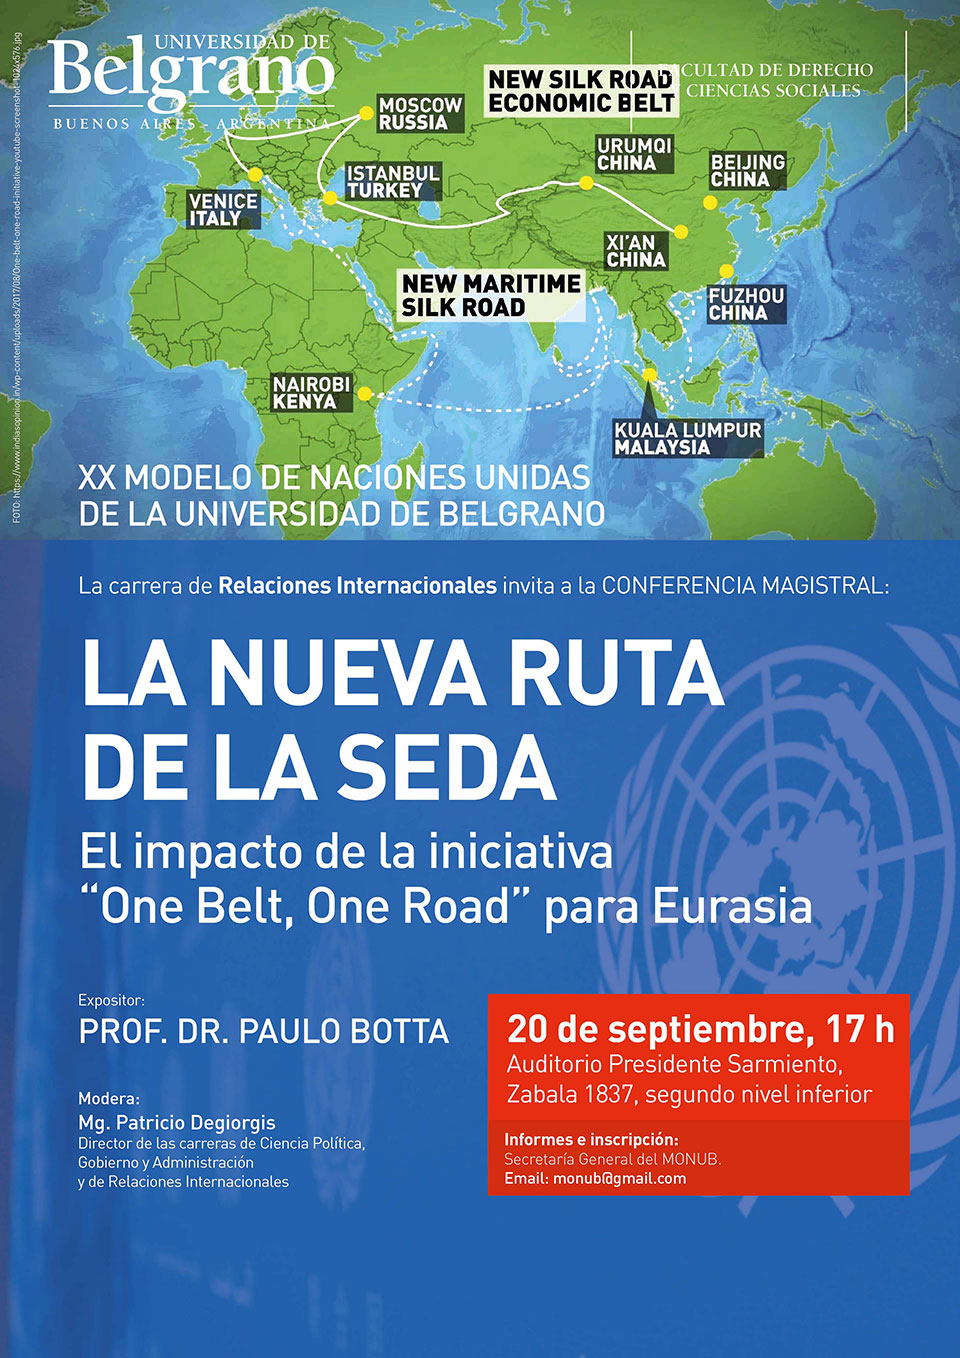 Universidad de Belgrano | Relaciones Internacionales | La Nueva Ruta de la Seda